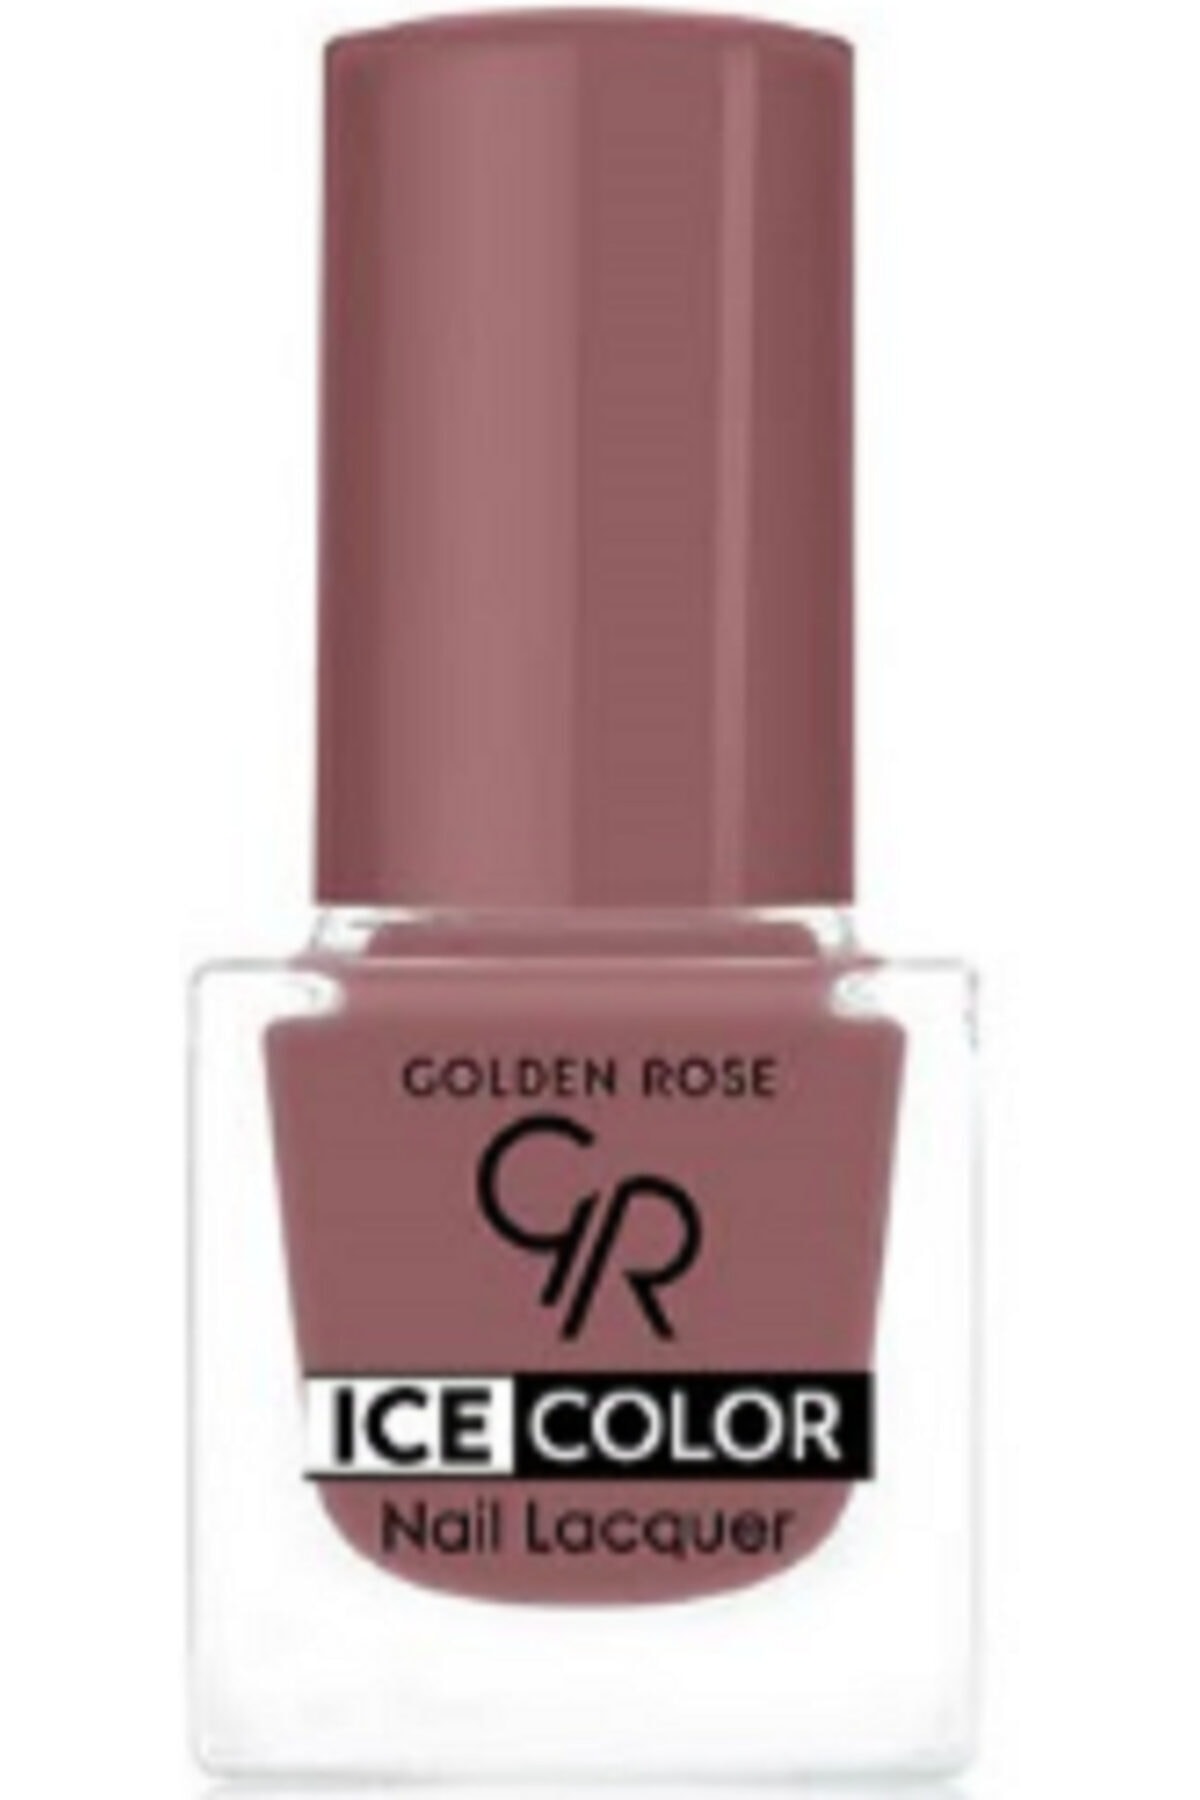 لاک ناخن یخی آیس چیک ICE شماره 185 رنگ نود تیره گلدن رز Golden Rose